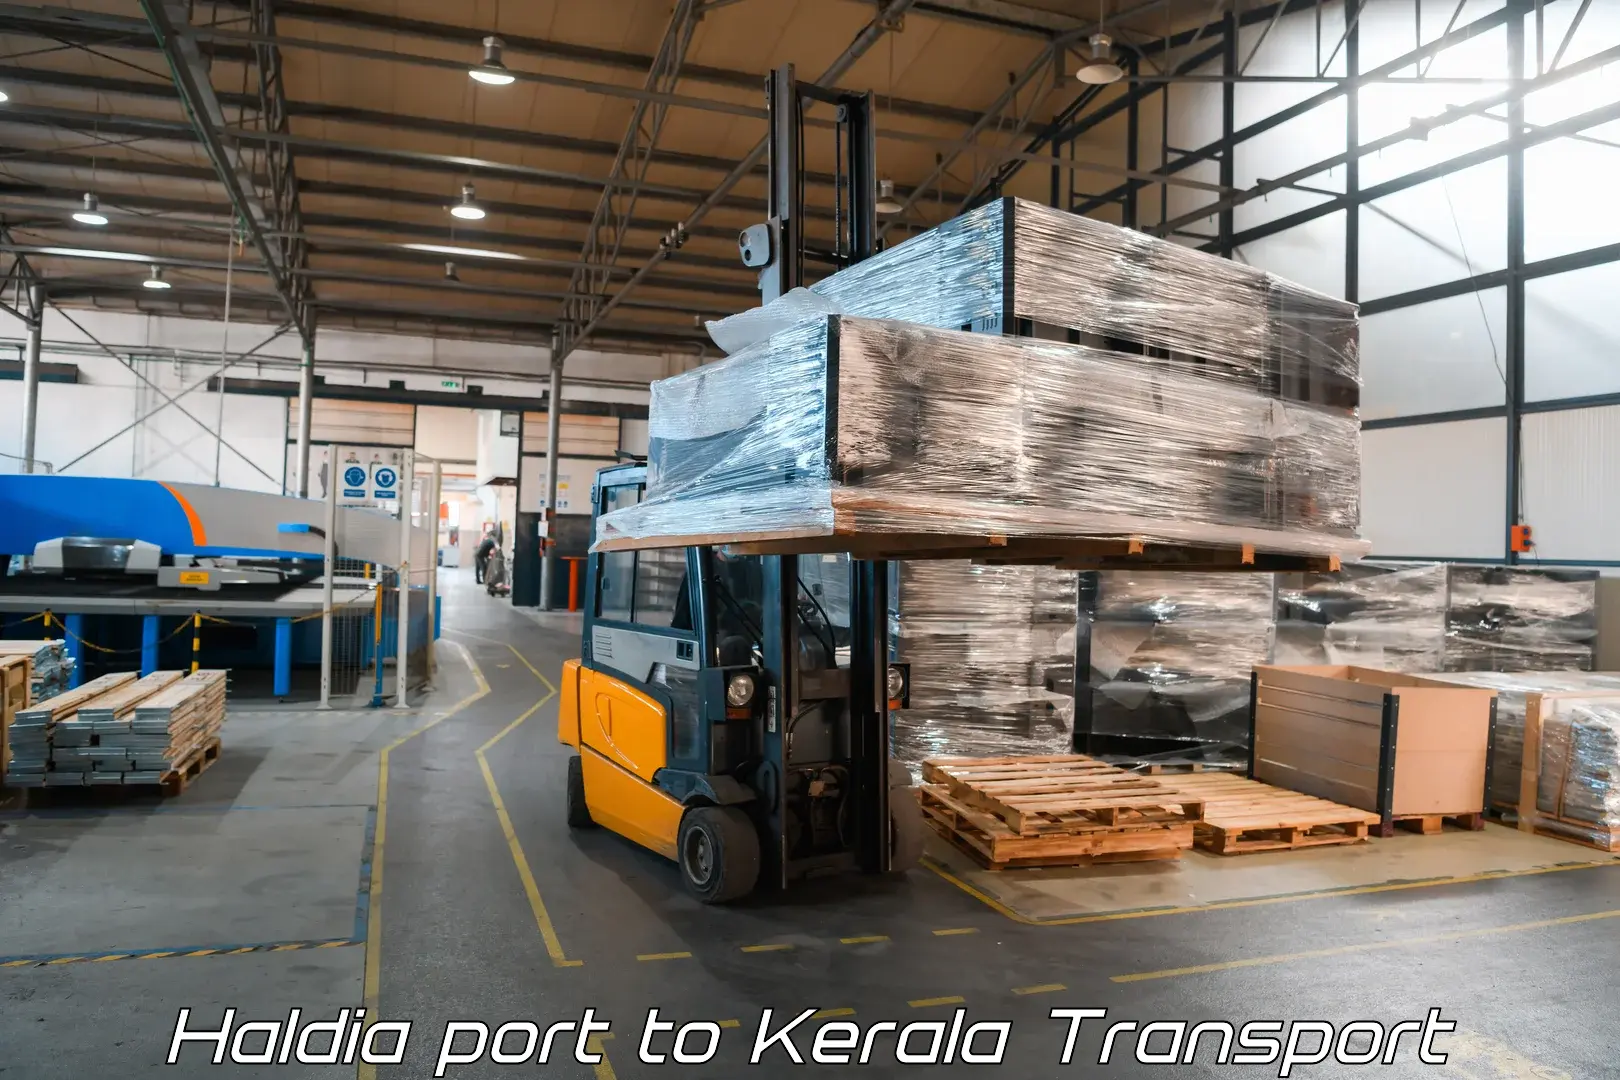 Container transport service Haldia port to Agali